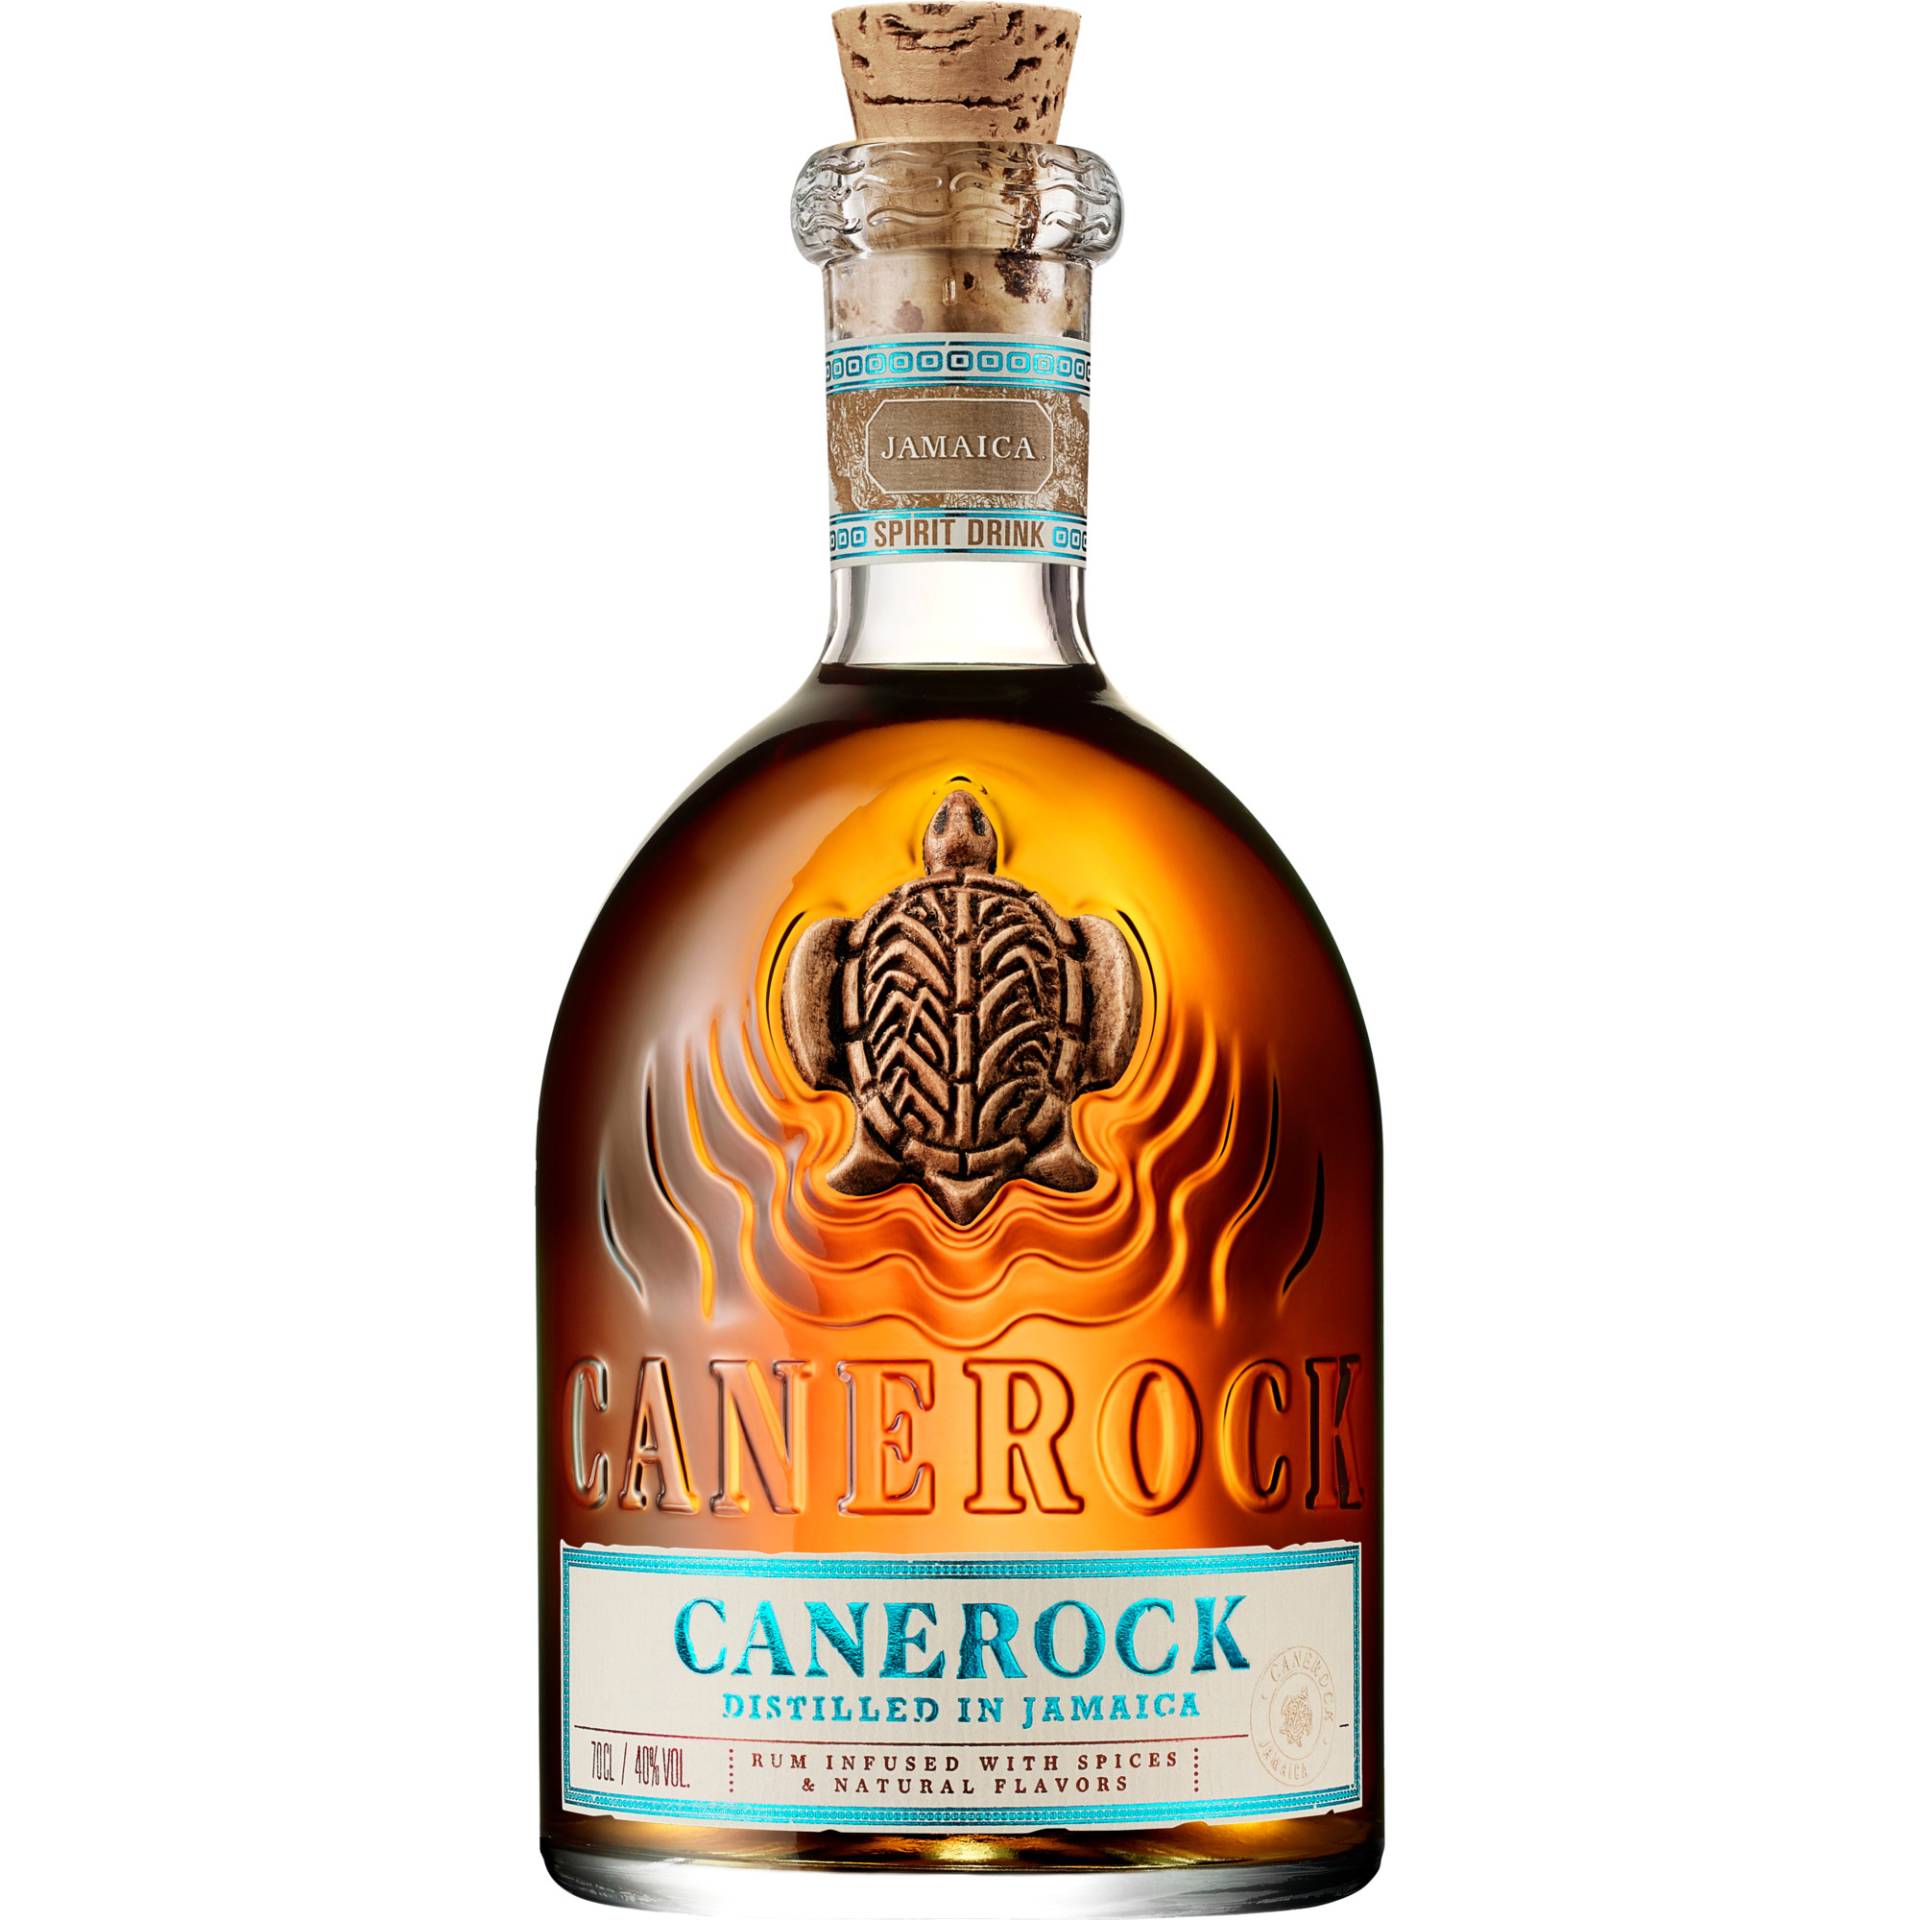 Canerock Jamaican Spiced Rum, Jamaica, 0,7 L, 40% Vol., Spirituosen von Ferrand Deutschland GmbH, Sundernallee 75, 53636 Iserlohn, Deutschland